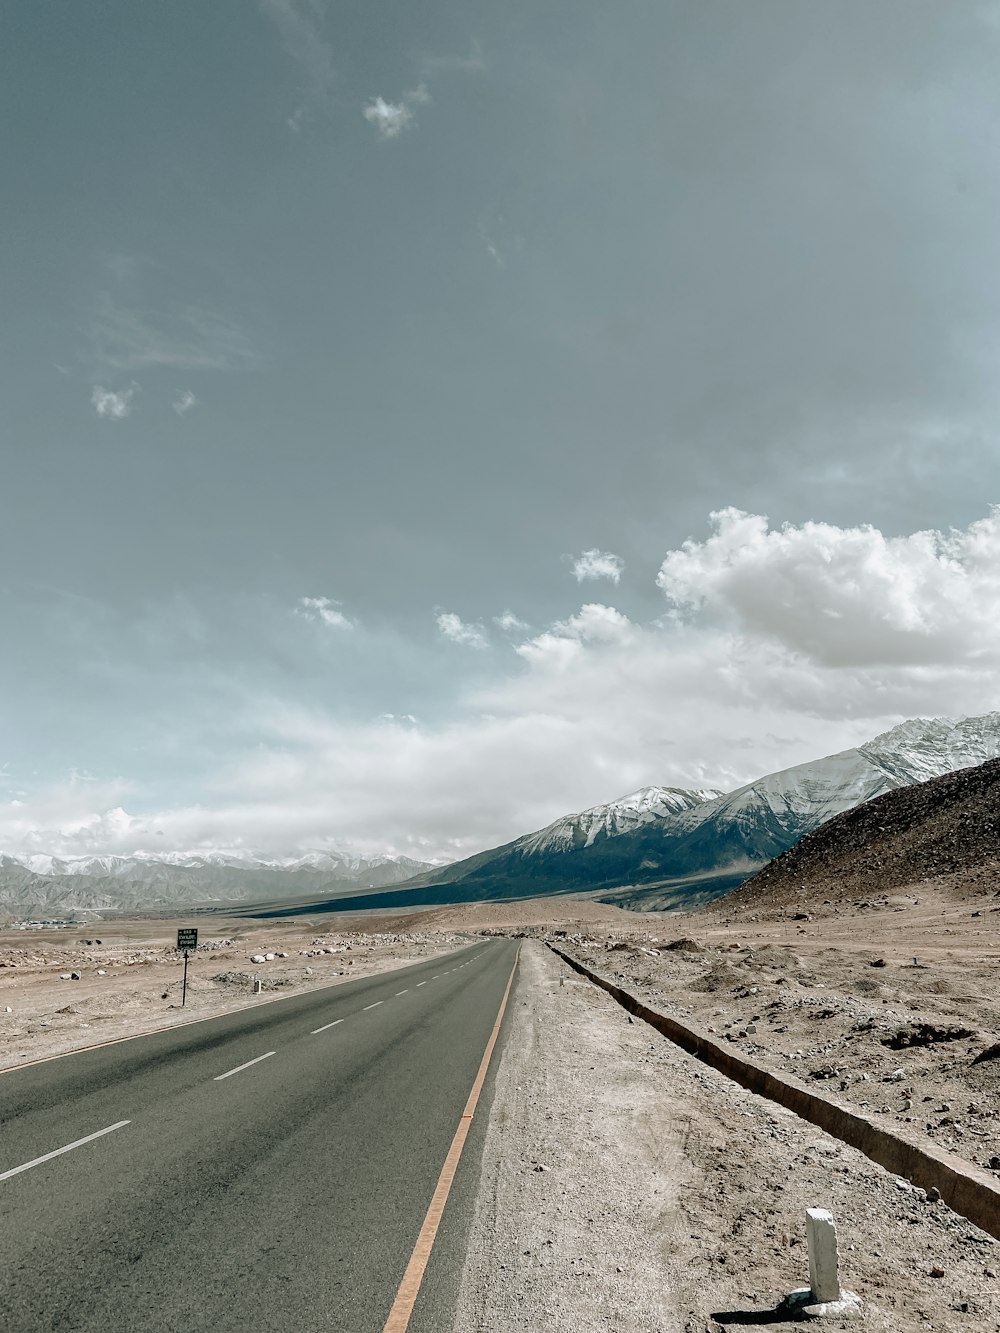 Una strada vuota in mezzo al deserto